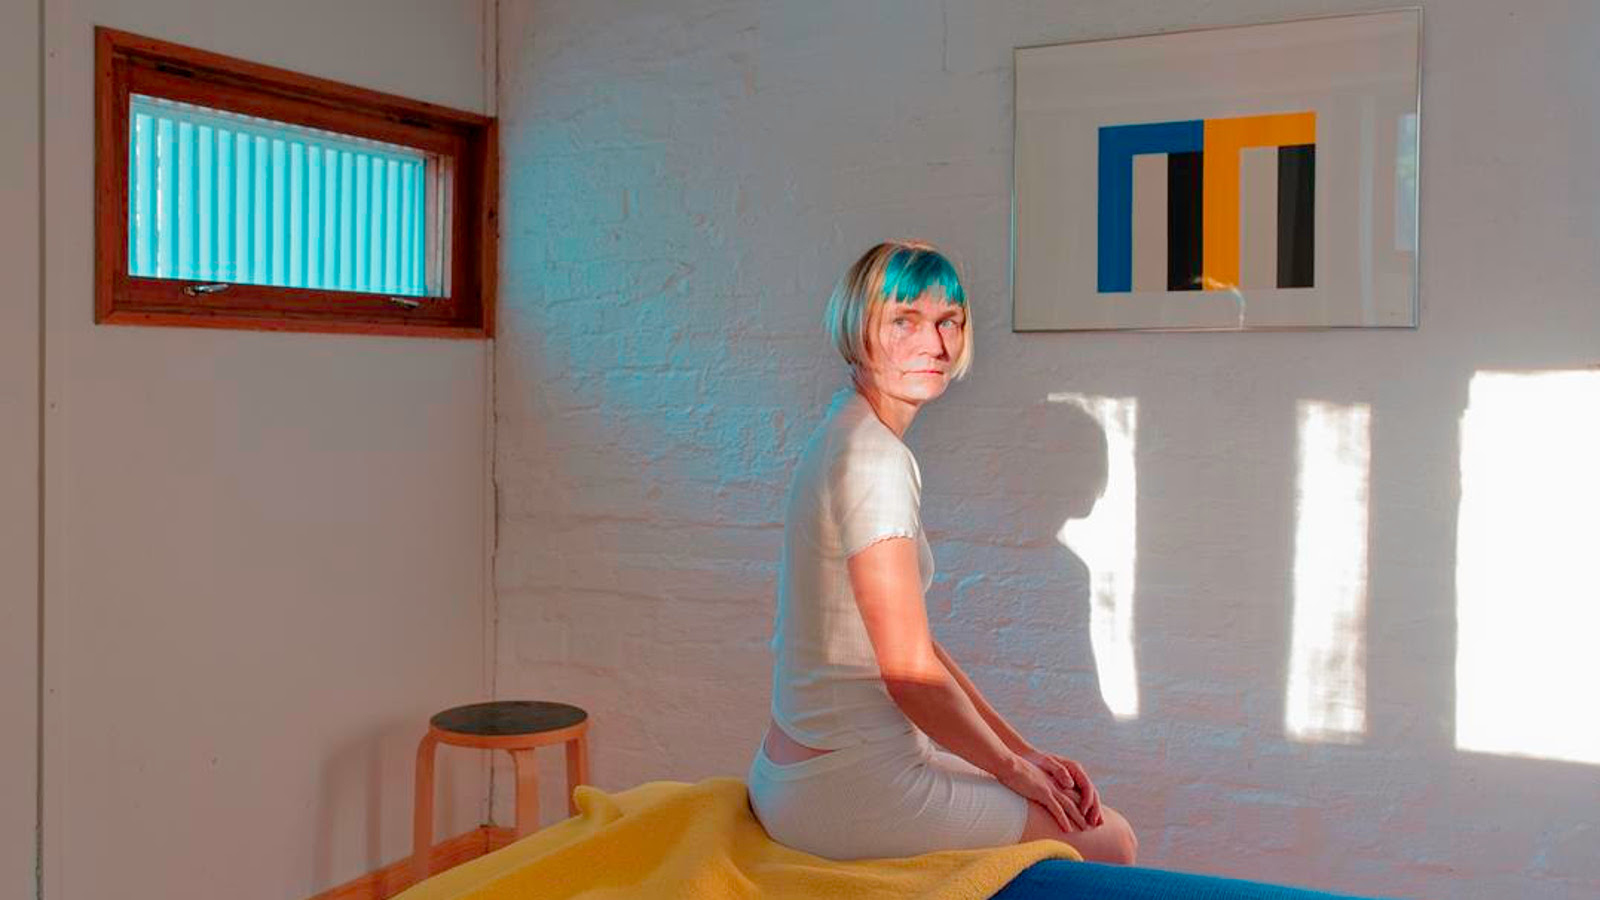 Kuvassa on nainen istumassa Alvar Aallon makuuhuoneessa sängyn reunalla ja sängyssä on keltainen peitto.  Huoneeseen heijastuu valoa sängynpäätyseinän ylhäällä olevasta ikkunasta. Toisella seinälä on taulu, jossa on sinistä, keltaist aja mustaa m-kirjaimen muotoisessa kulmikkaassa kuviossa.